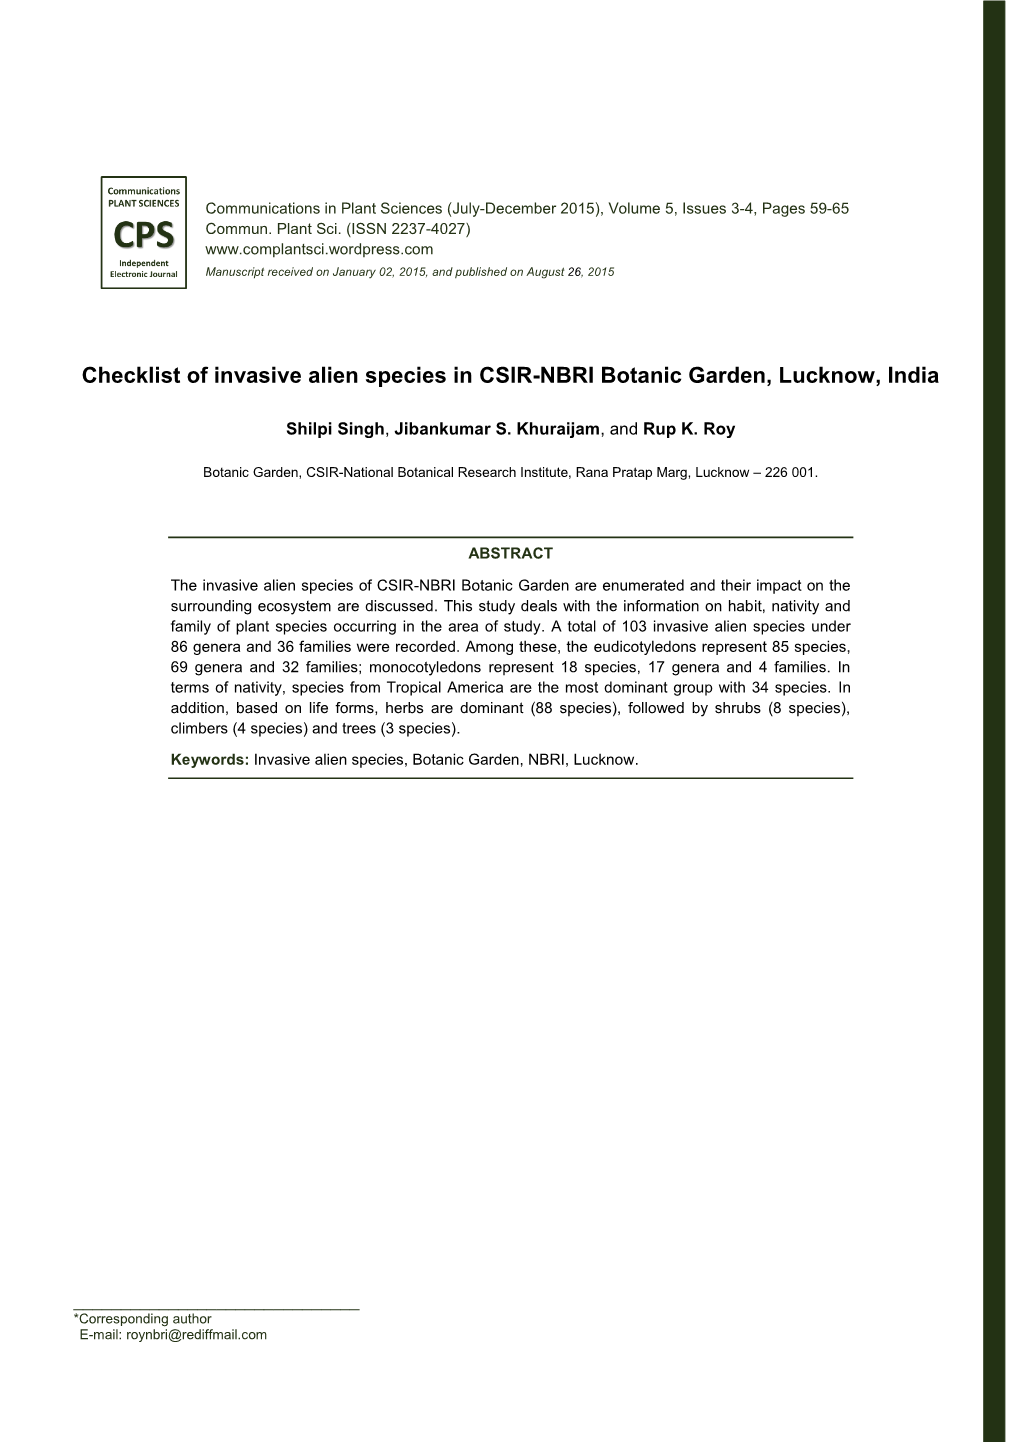 Checklist of Invasive Alien Species in CSIR-NBRI Botanic Garden, Lucknow, India